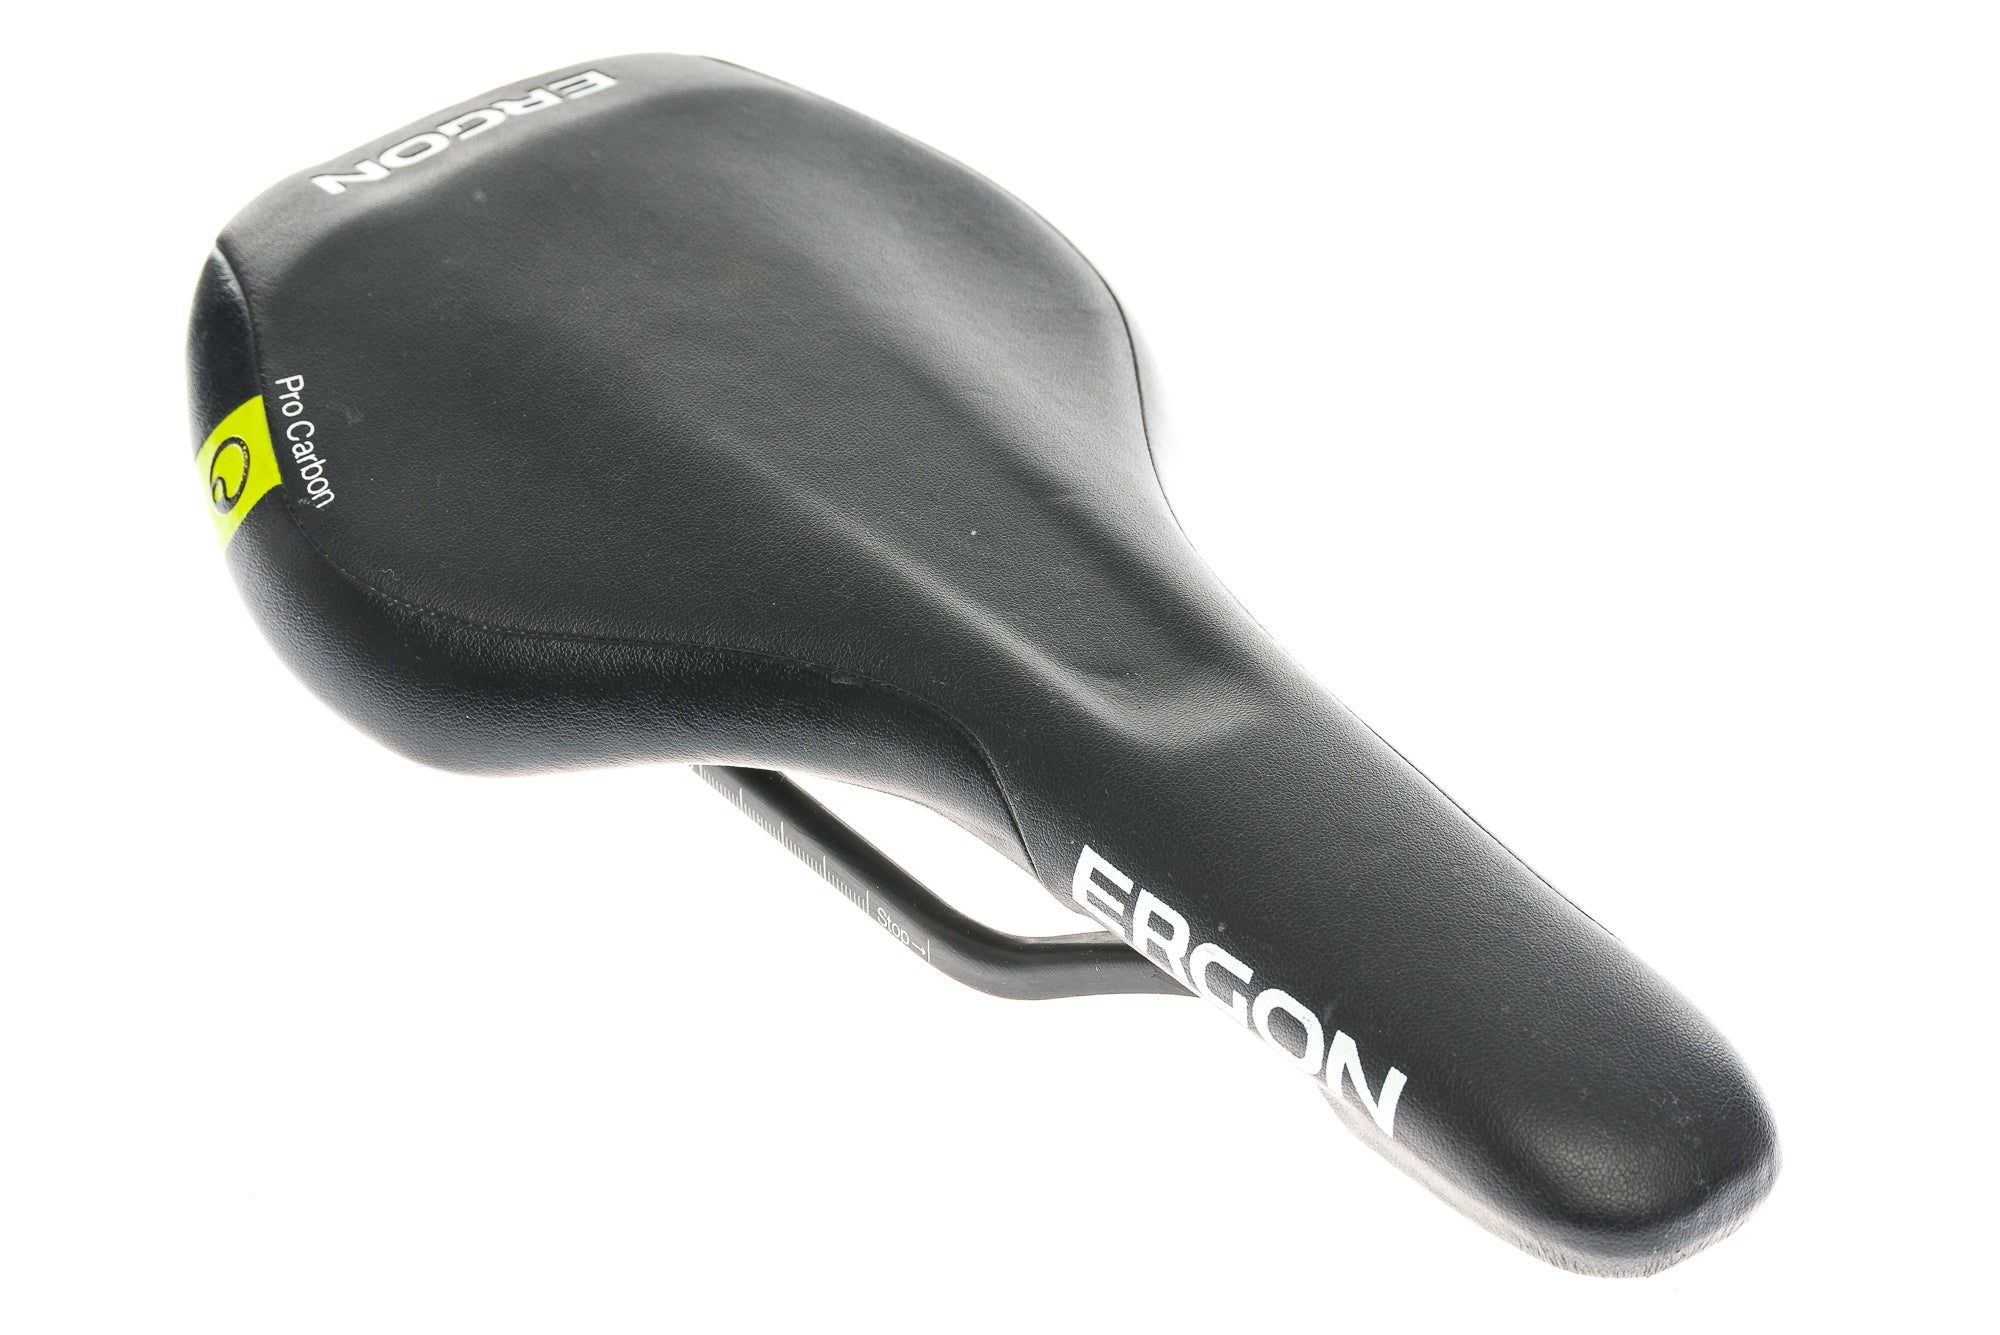 Ergon SME3-M Pro Carbon Saddle 146mm 7x9mm Carbon Rails Black